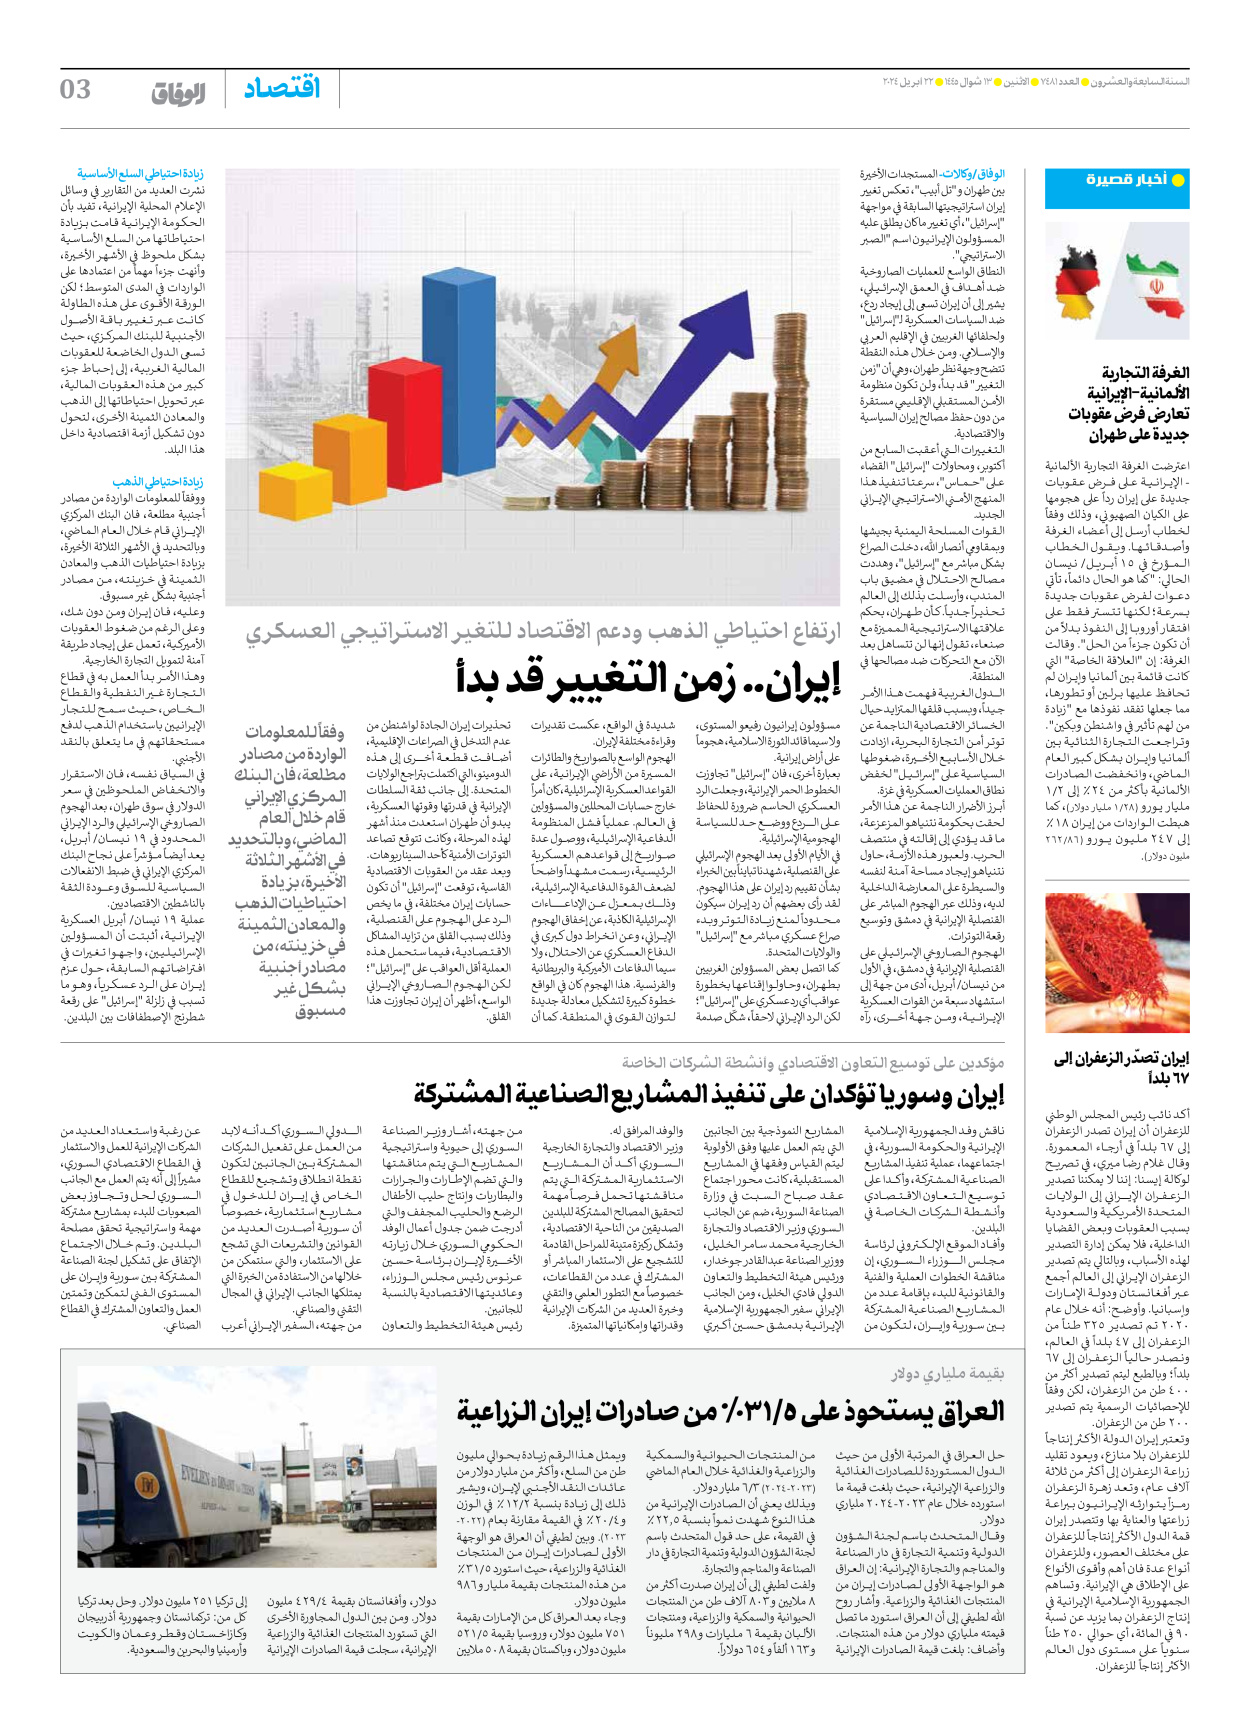 صحیفة ایران الدولیة الوفاق - العدد سبعة آلاف وأربعمائة وواحد وثمانون - ٢٢ أبريل ٢٠٢٤ - الصفحة ۳